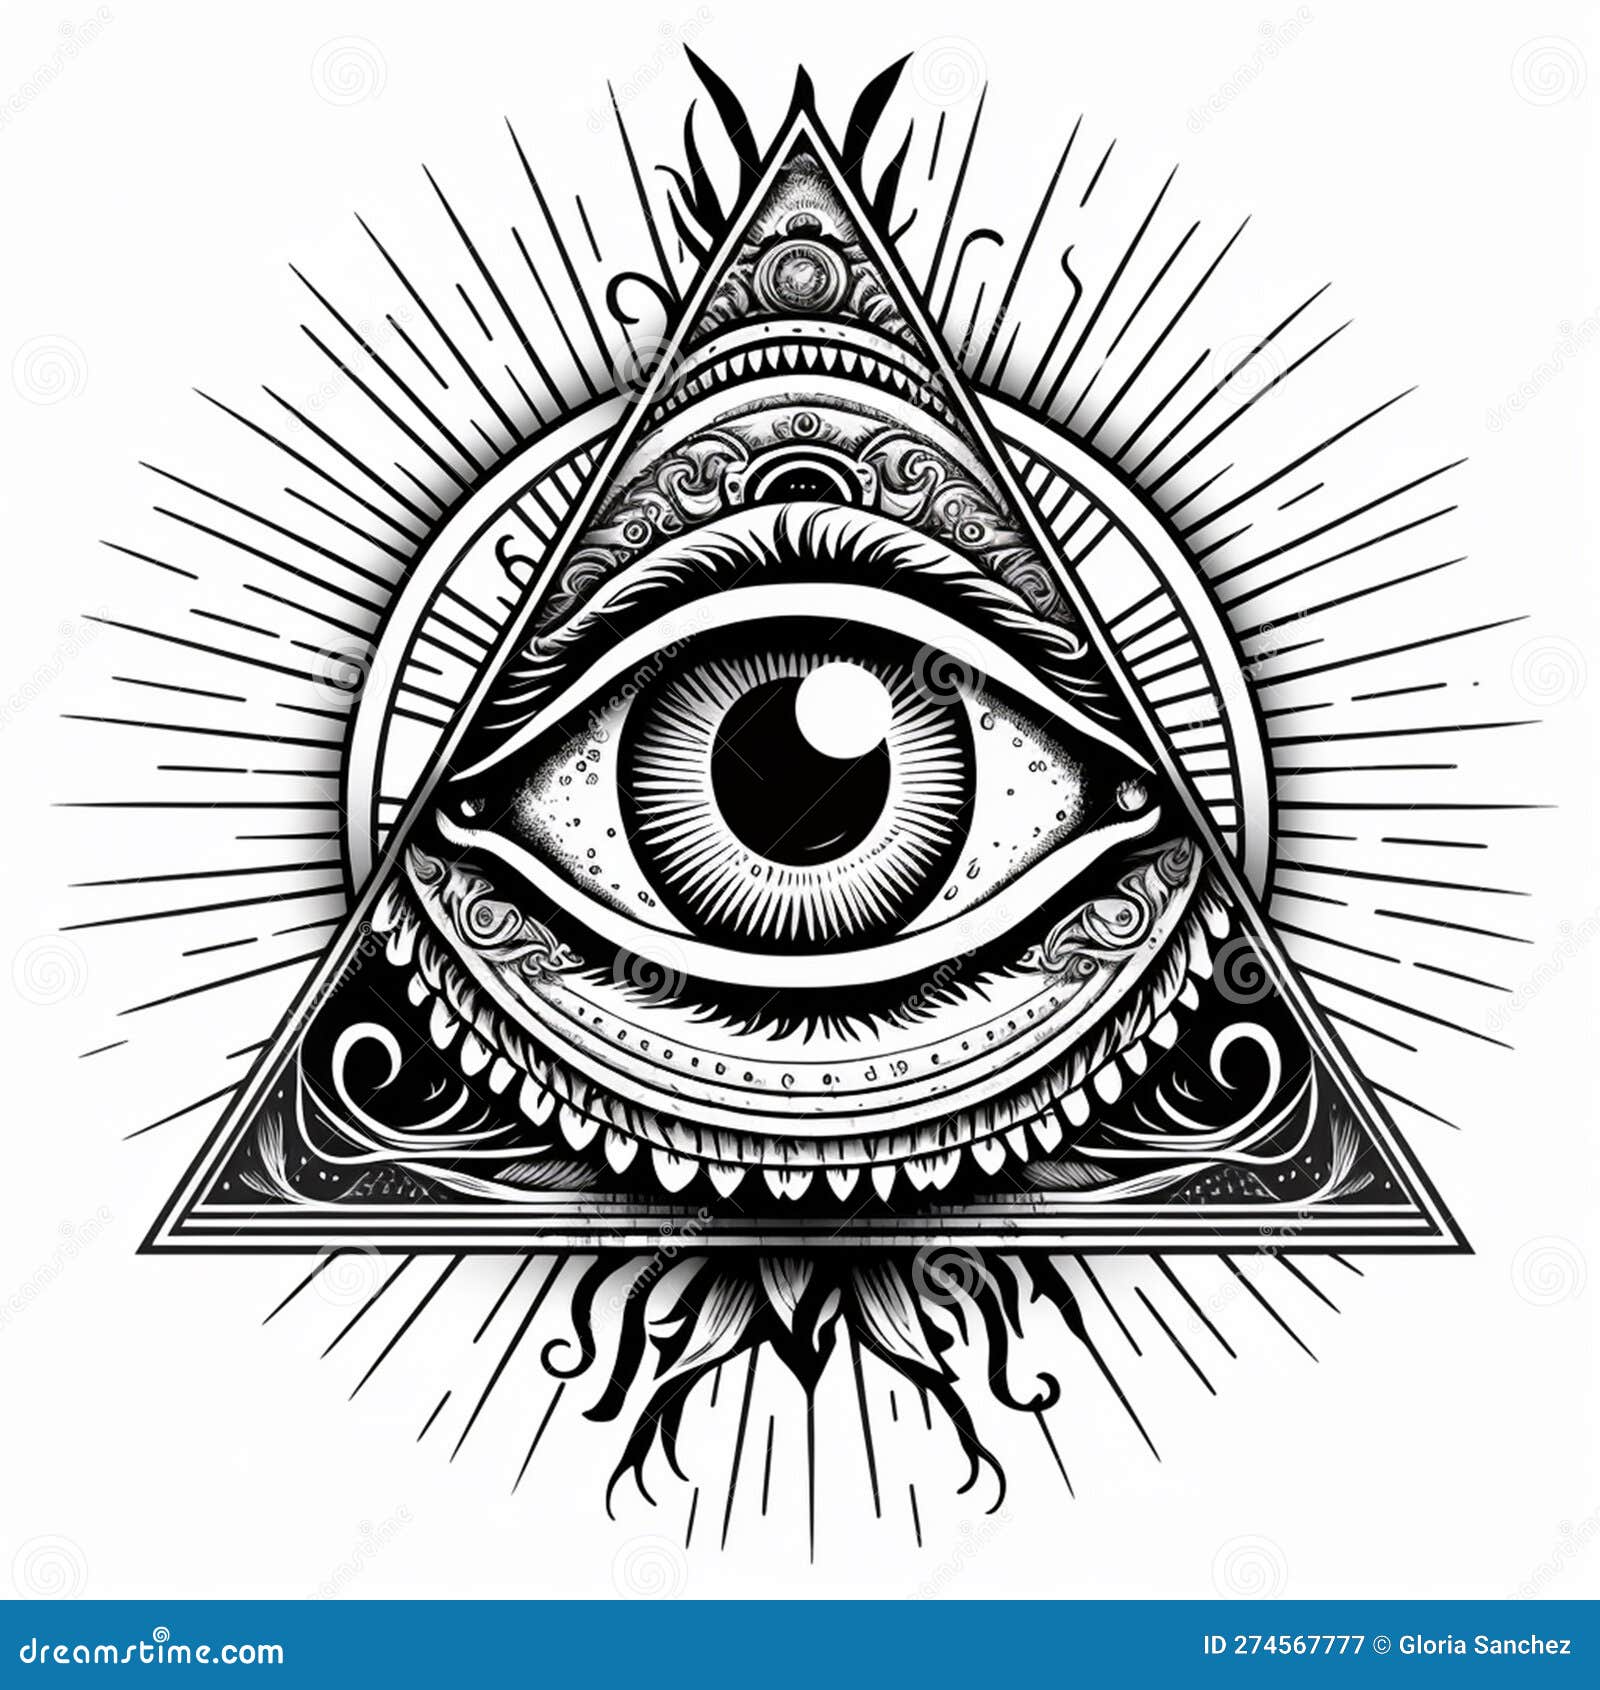 Pyramid Eye Tattoo - Best Tattoo Ideas Gallery